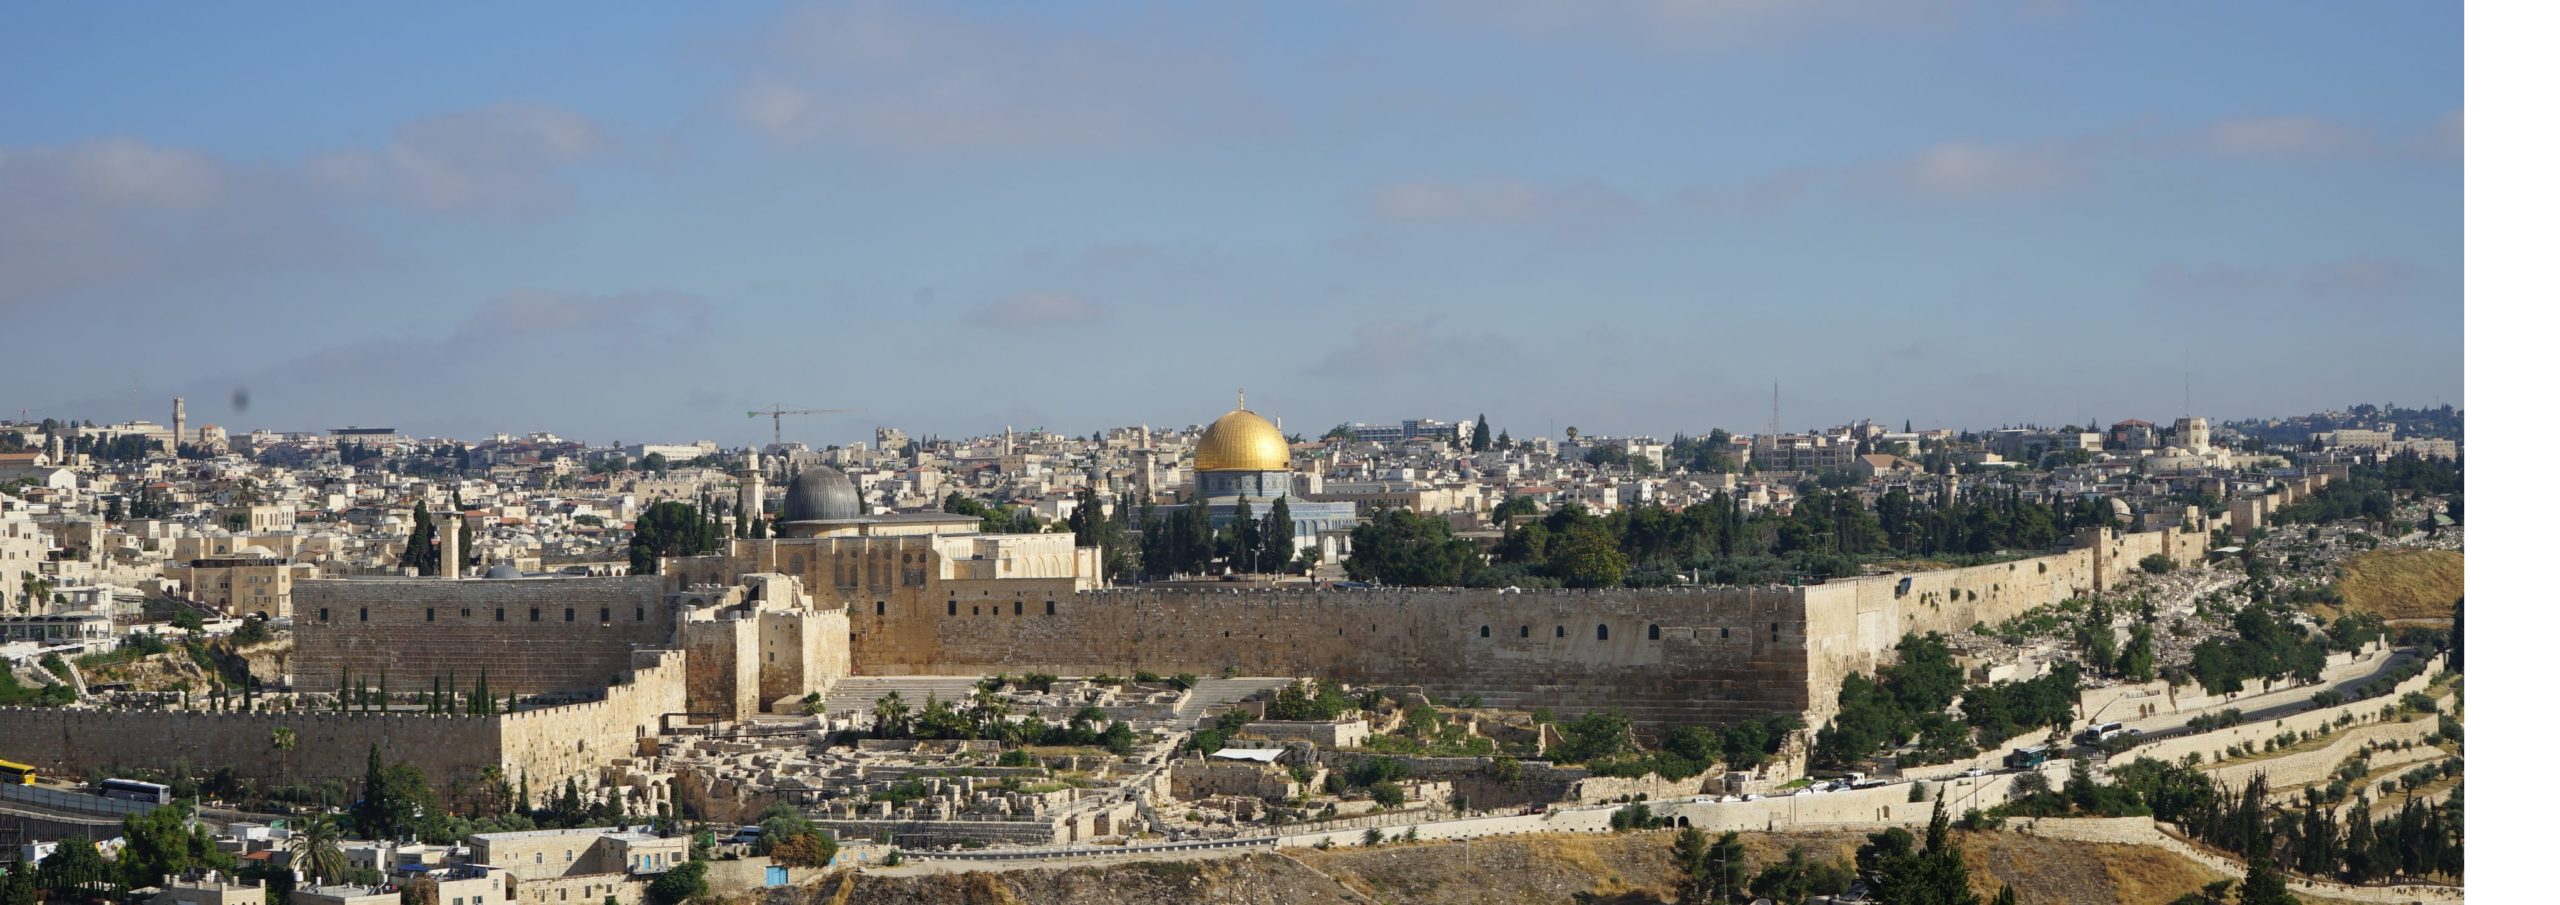 Prier pour l’unité à Jérusalem